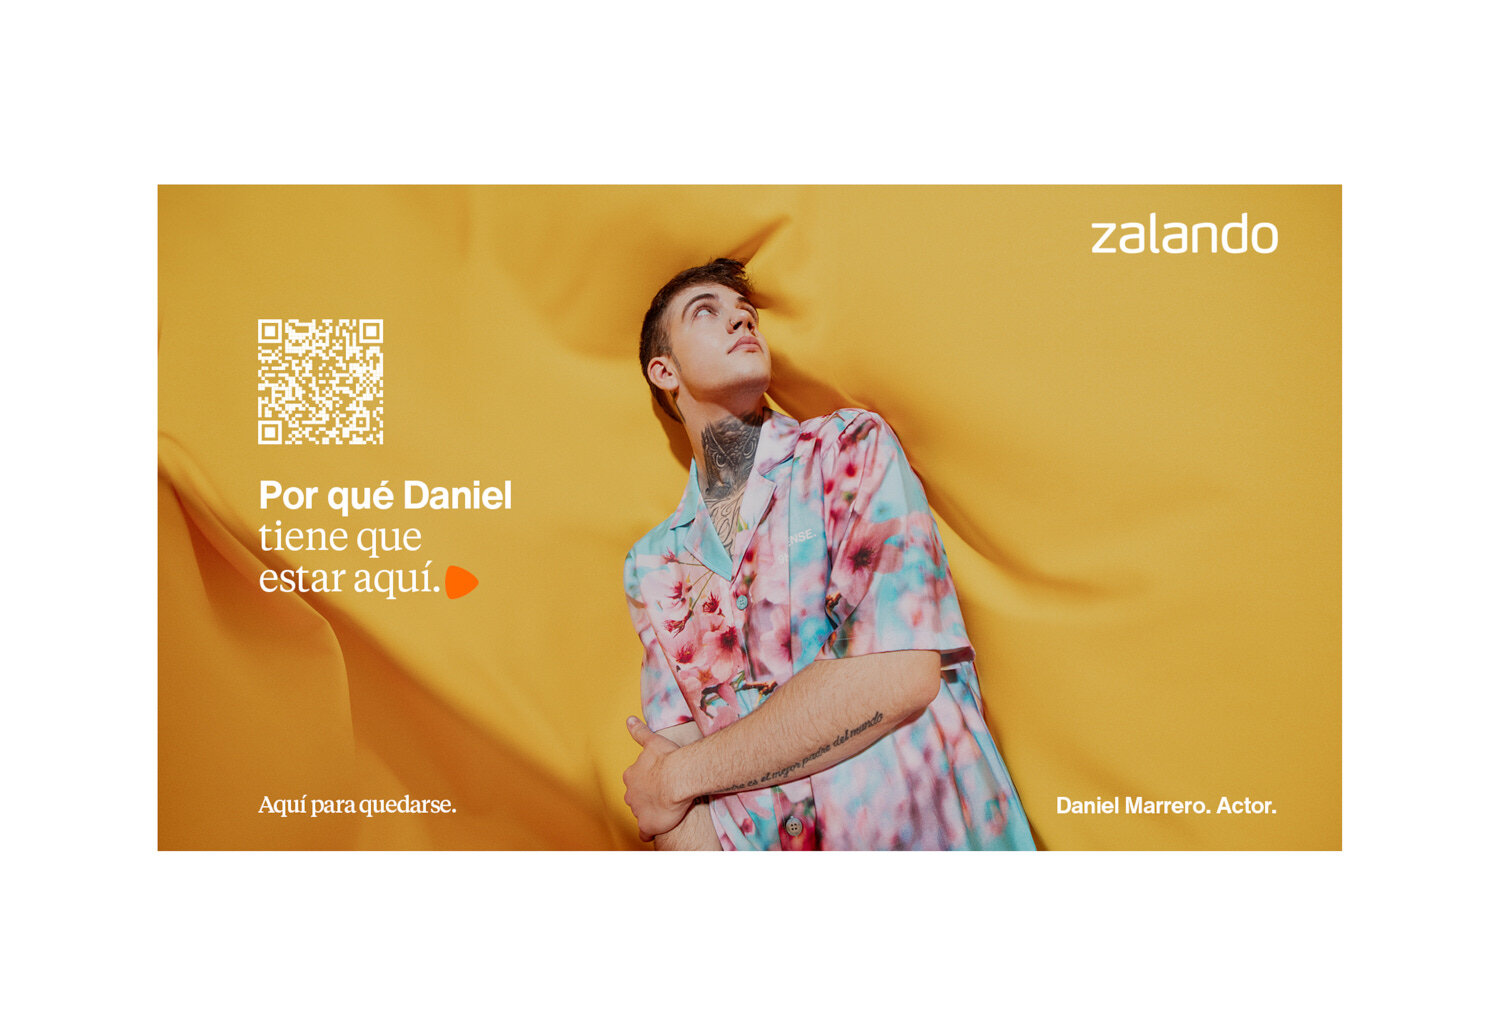 qandcumber_advertising_fashion_zalando_aquiparaquedarse 3.jpg